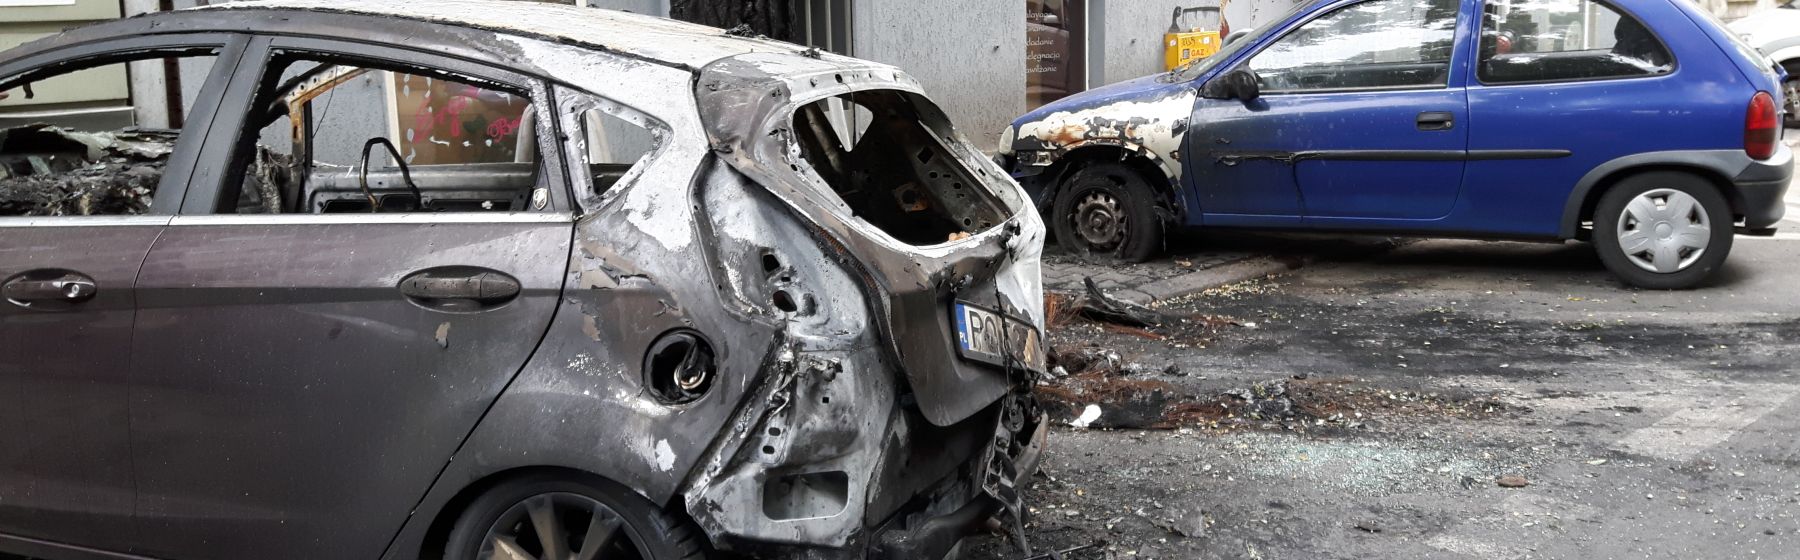 Pożar samochodów na Szamarzewskiego to najprawdopodobnie podpalenie